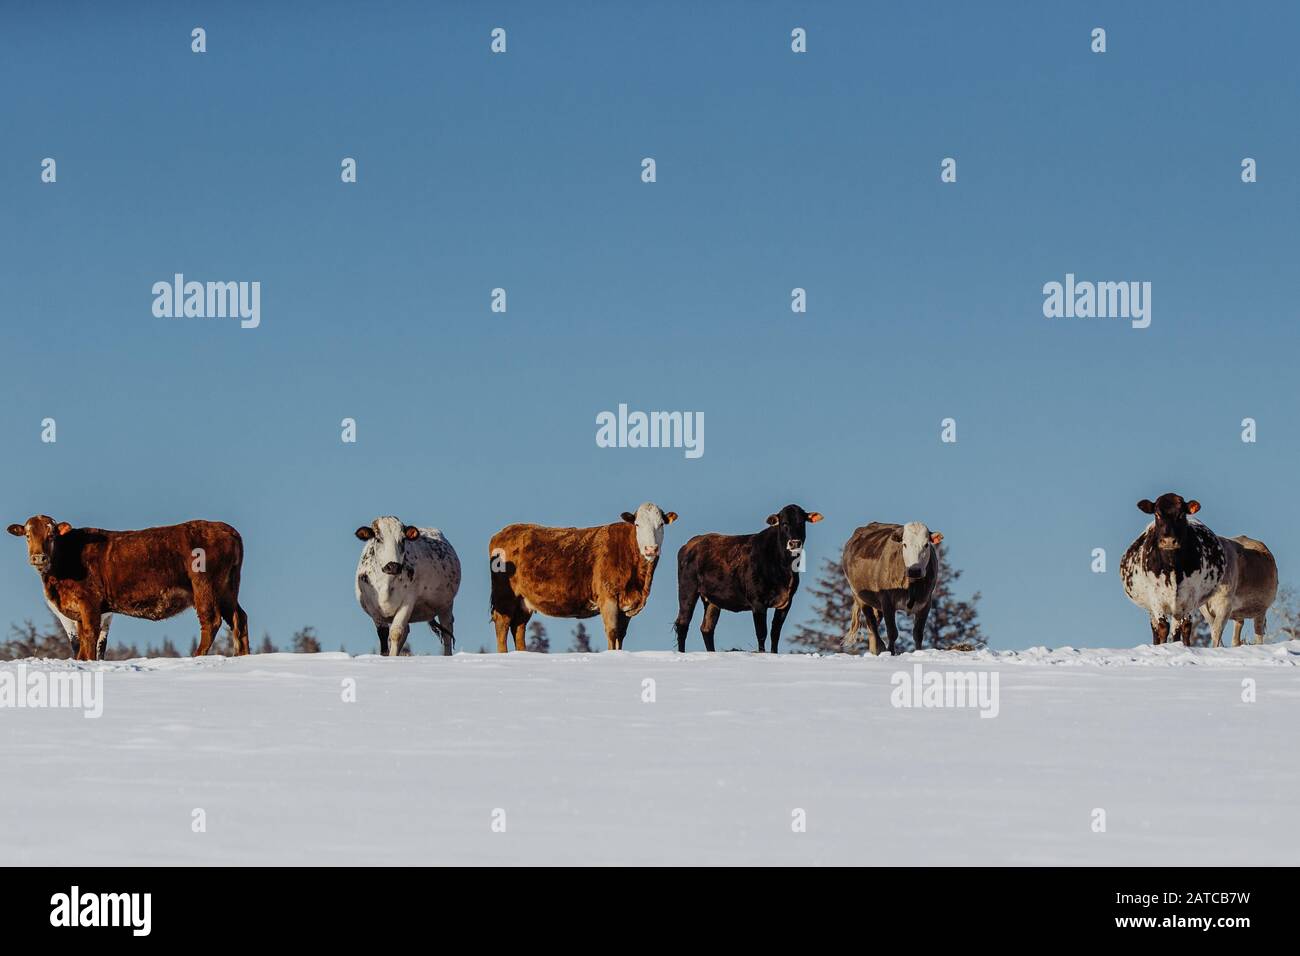 Hilera de vacas en pie en la nieve, Canadá Foto de stock